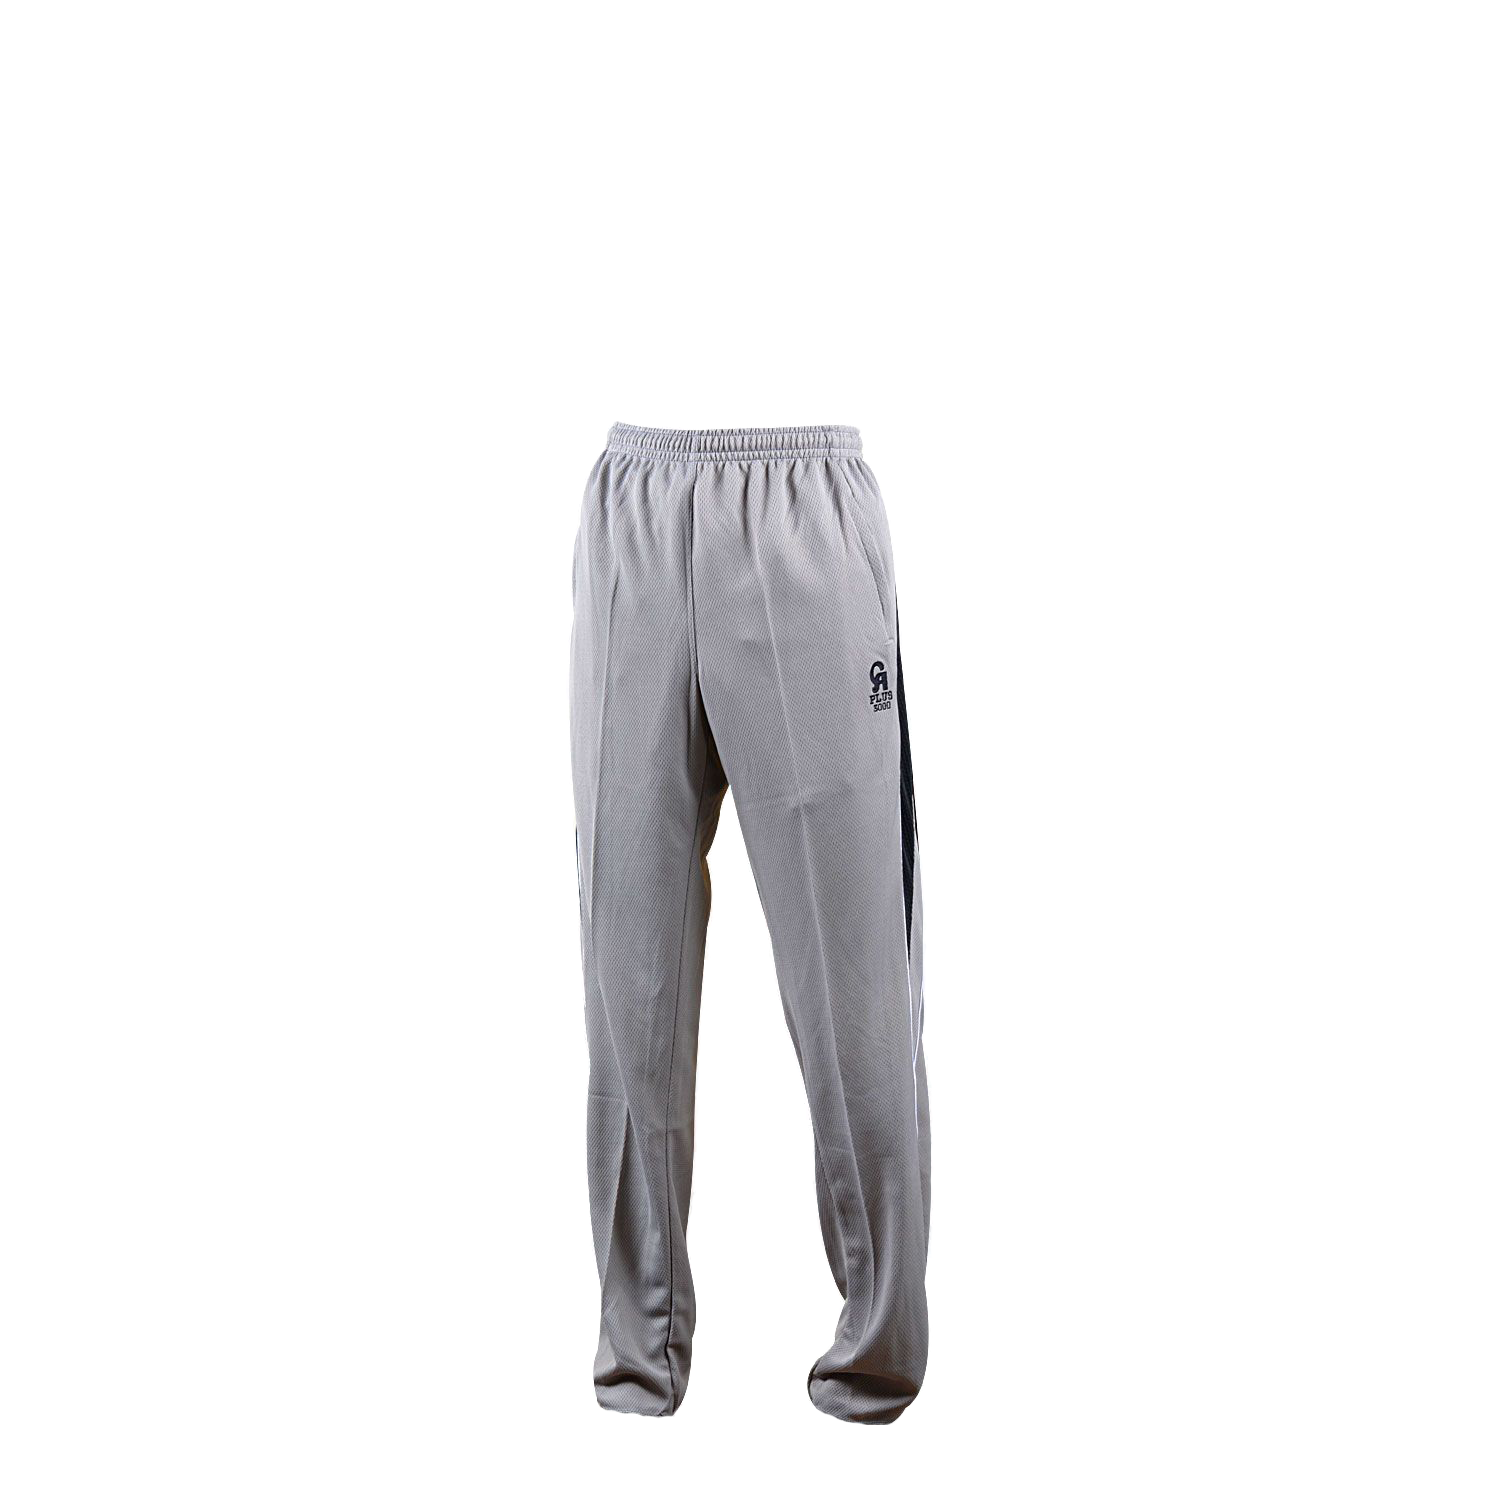 CA ODI Pants Kit Grey